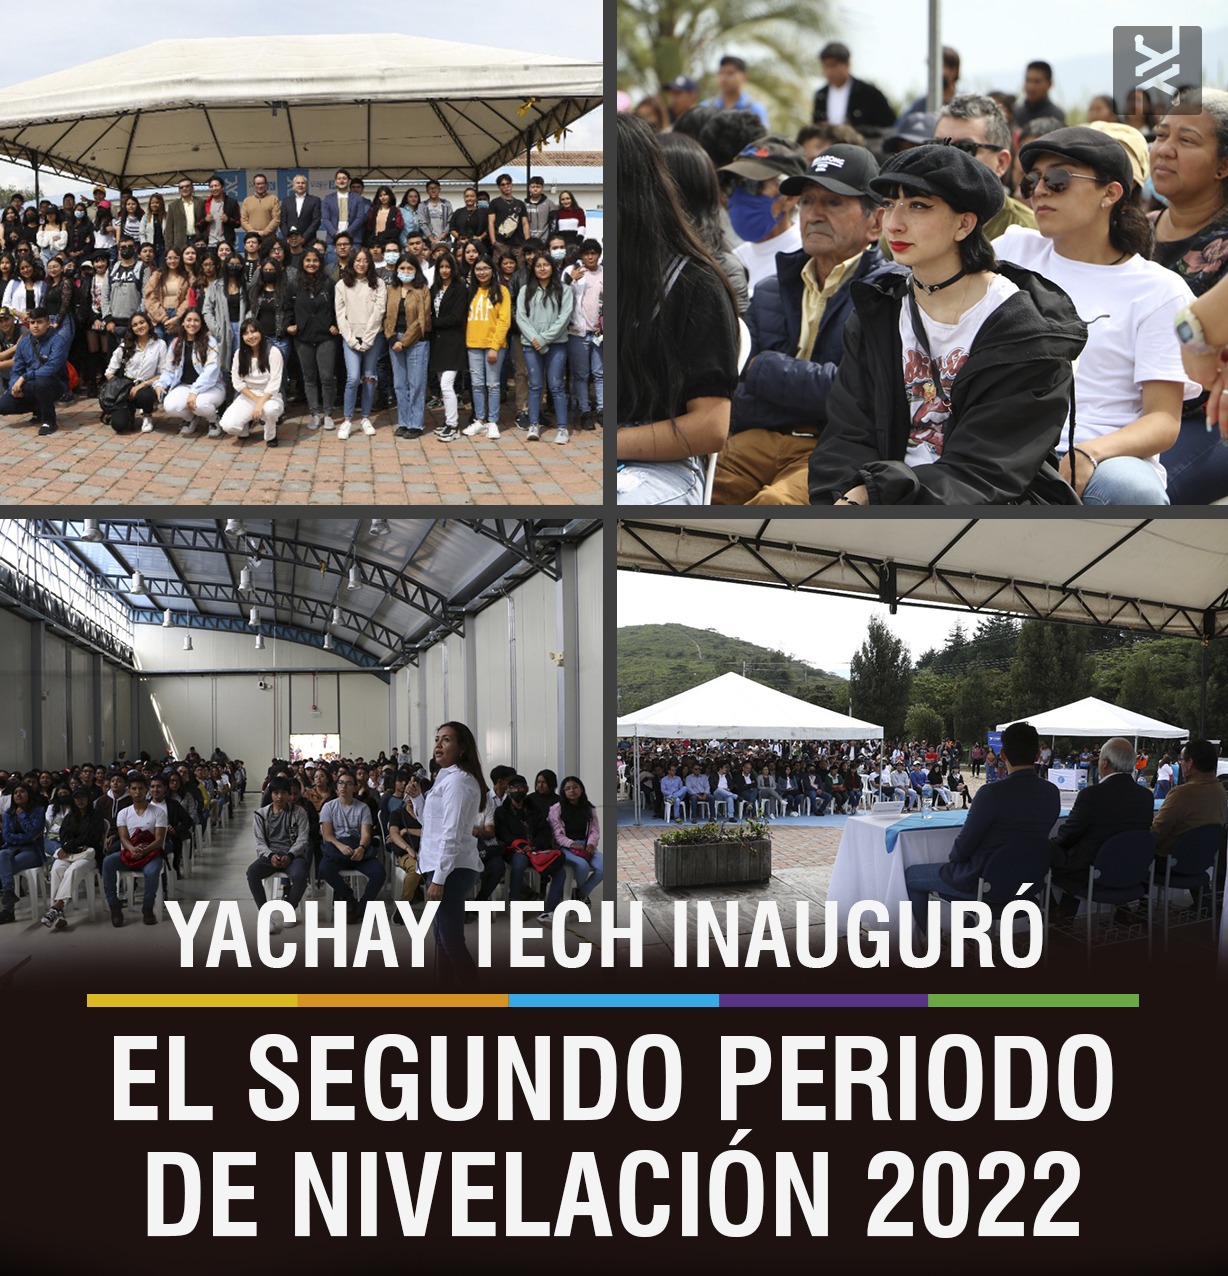 YACHAY TECH INAUGURÓ EL SEGUNDO PERIODO DE NIVELACIÓN 2022